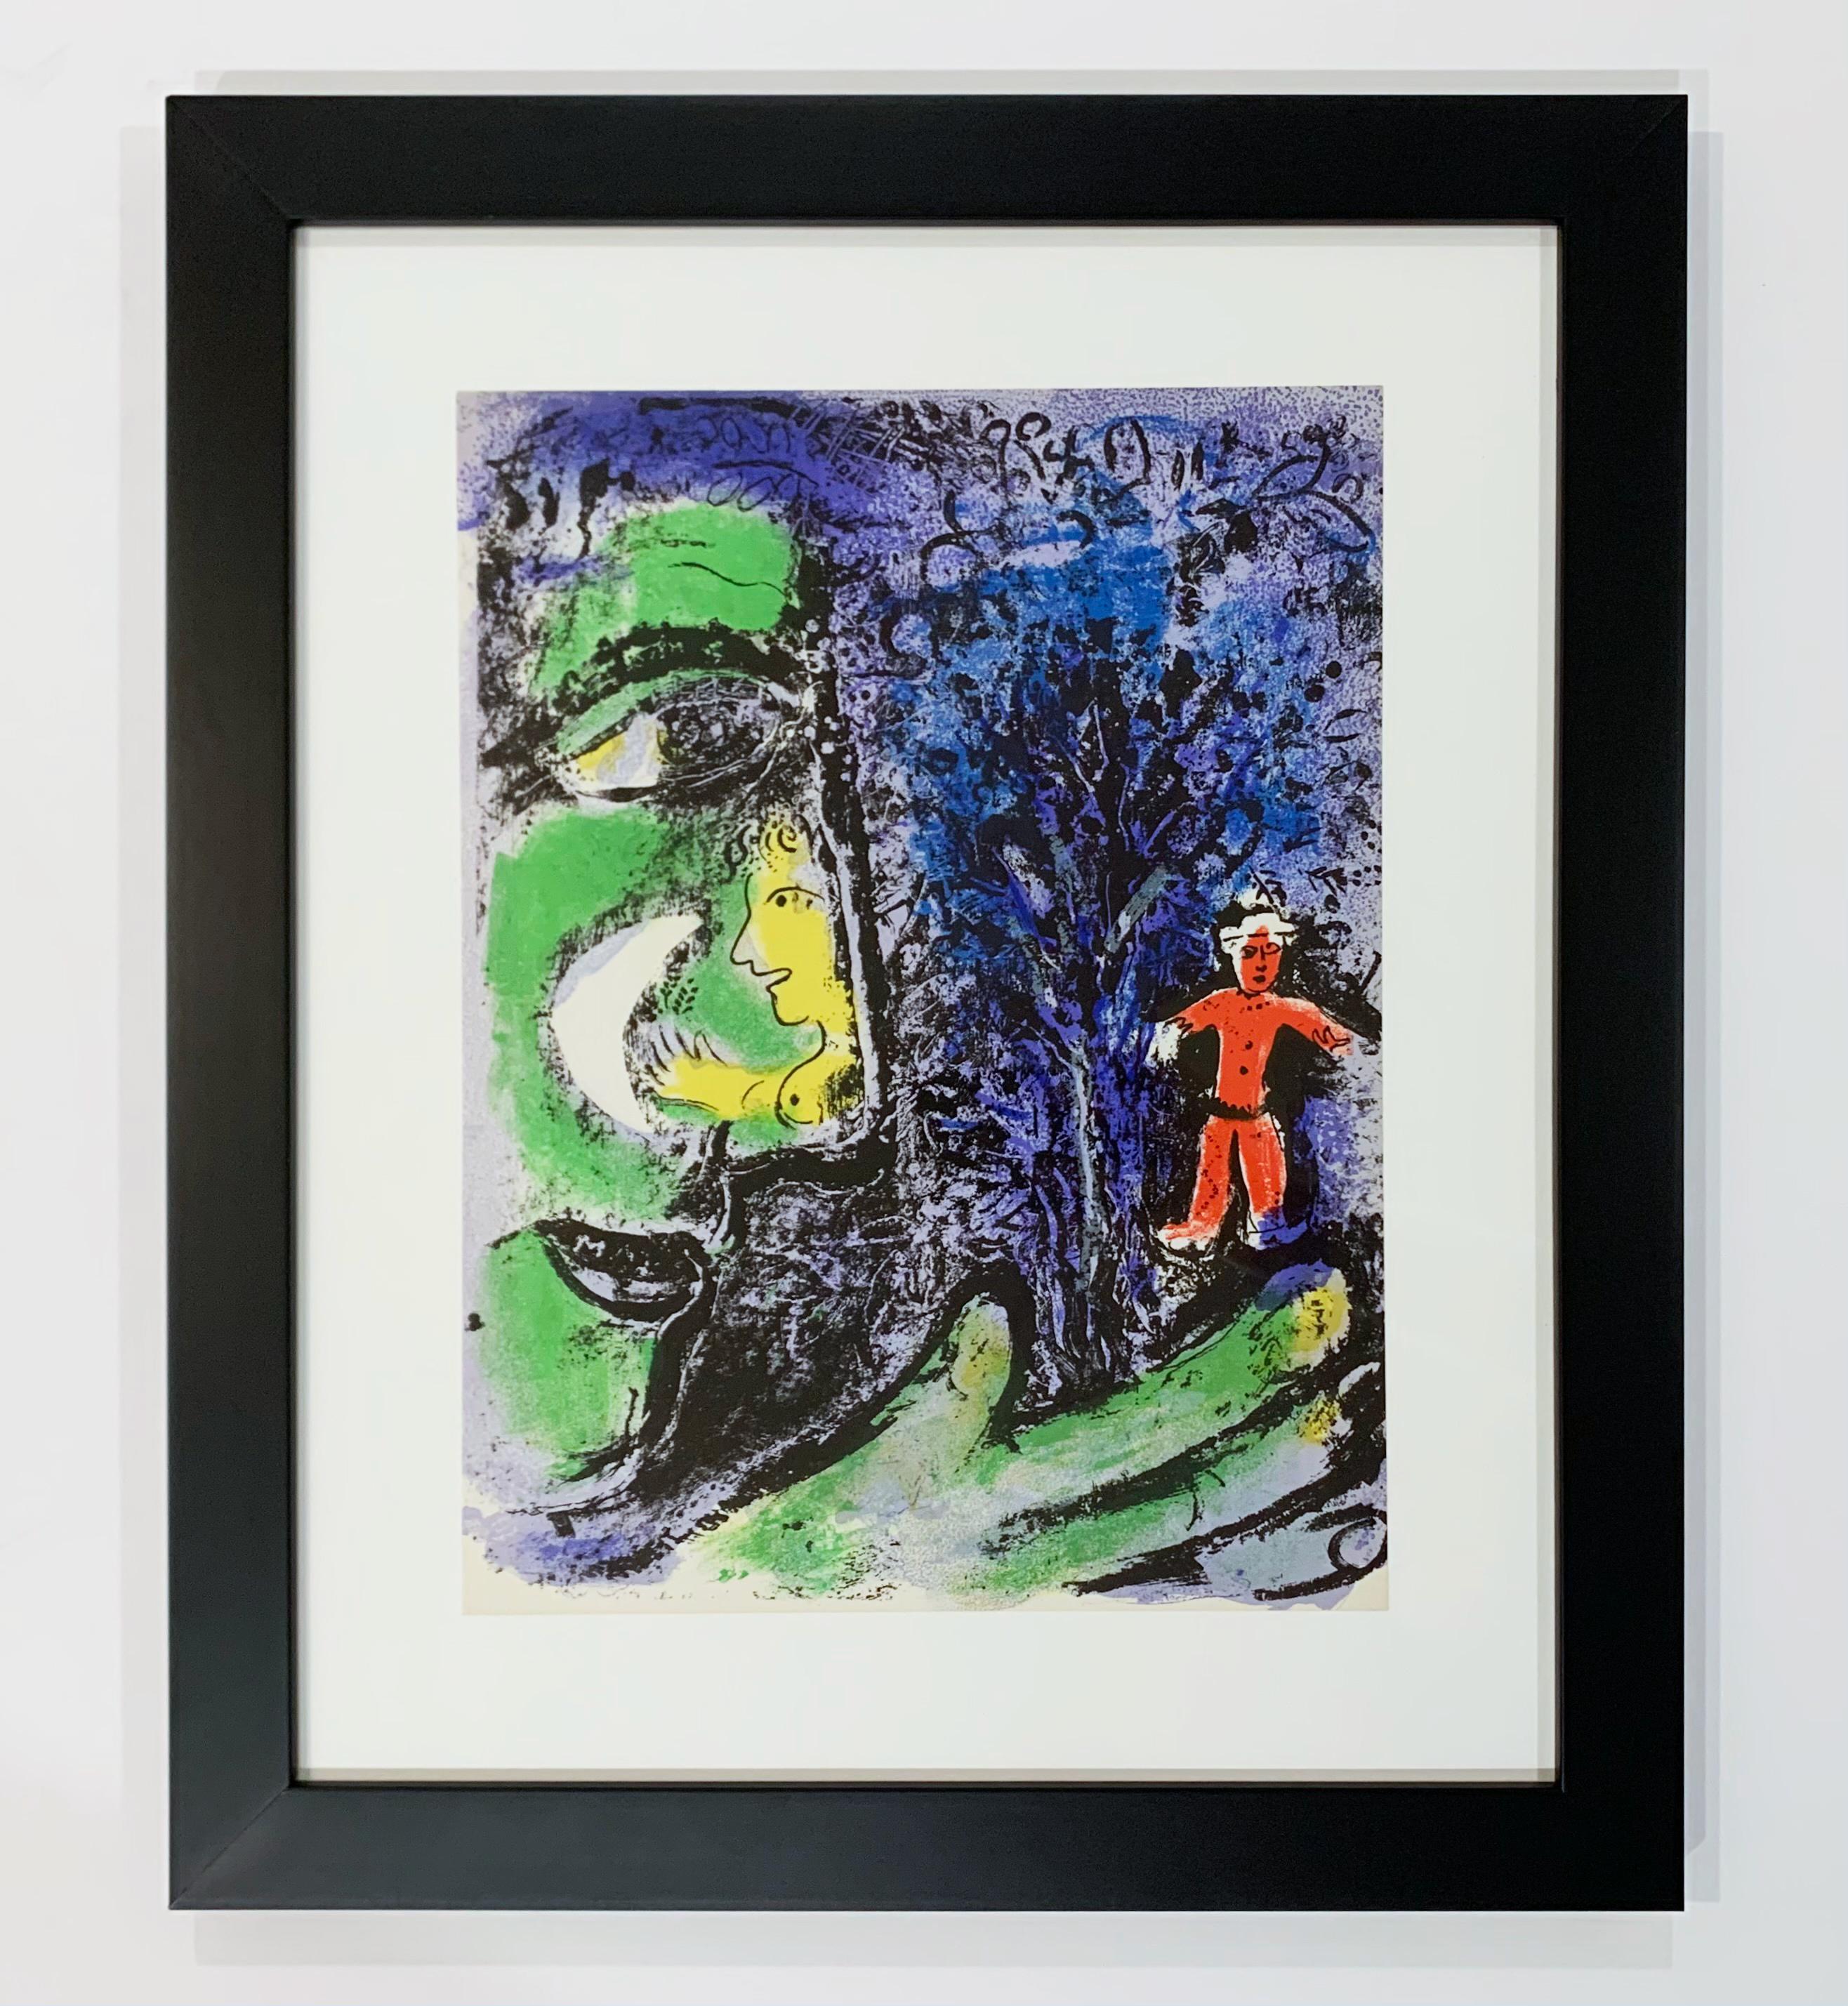 Profile et enfant rouge, de la lithographie de Mourlot I - Print de Marc Chagall